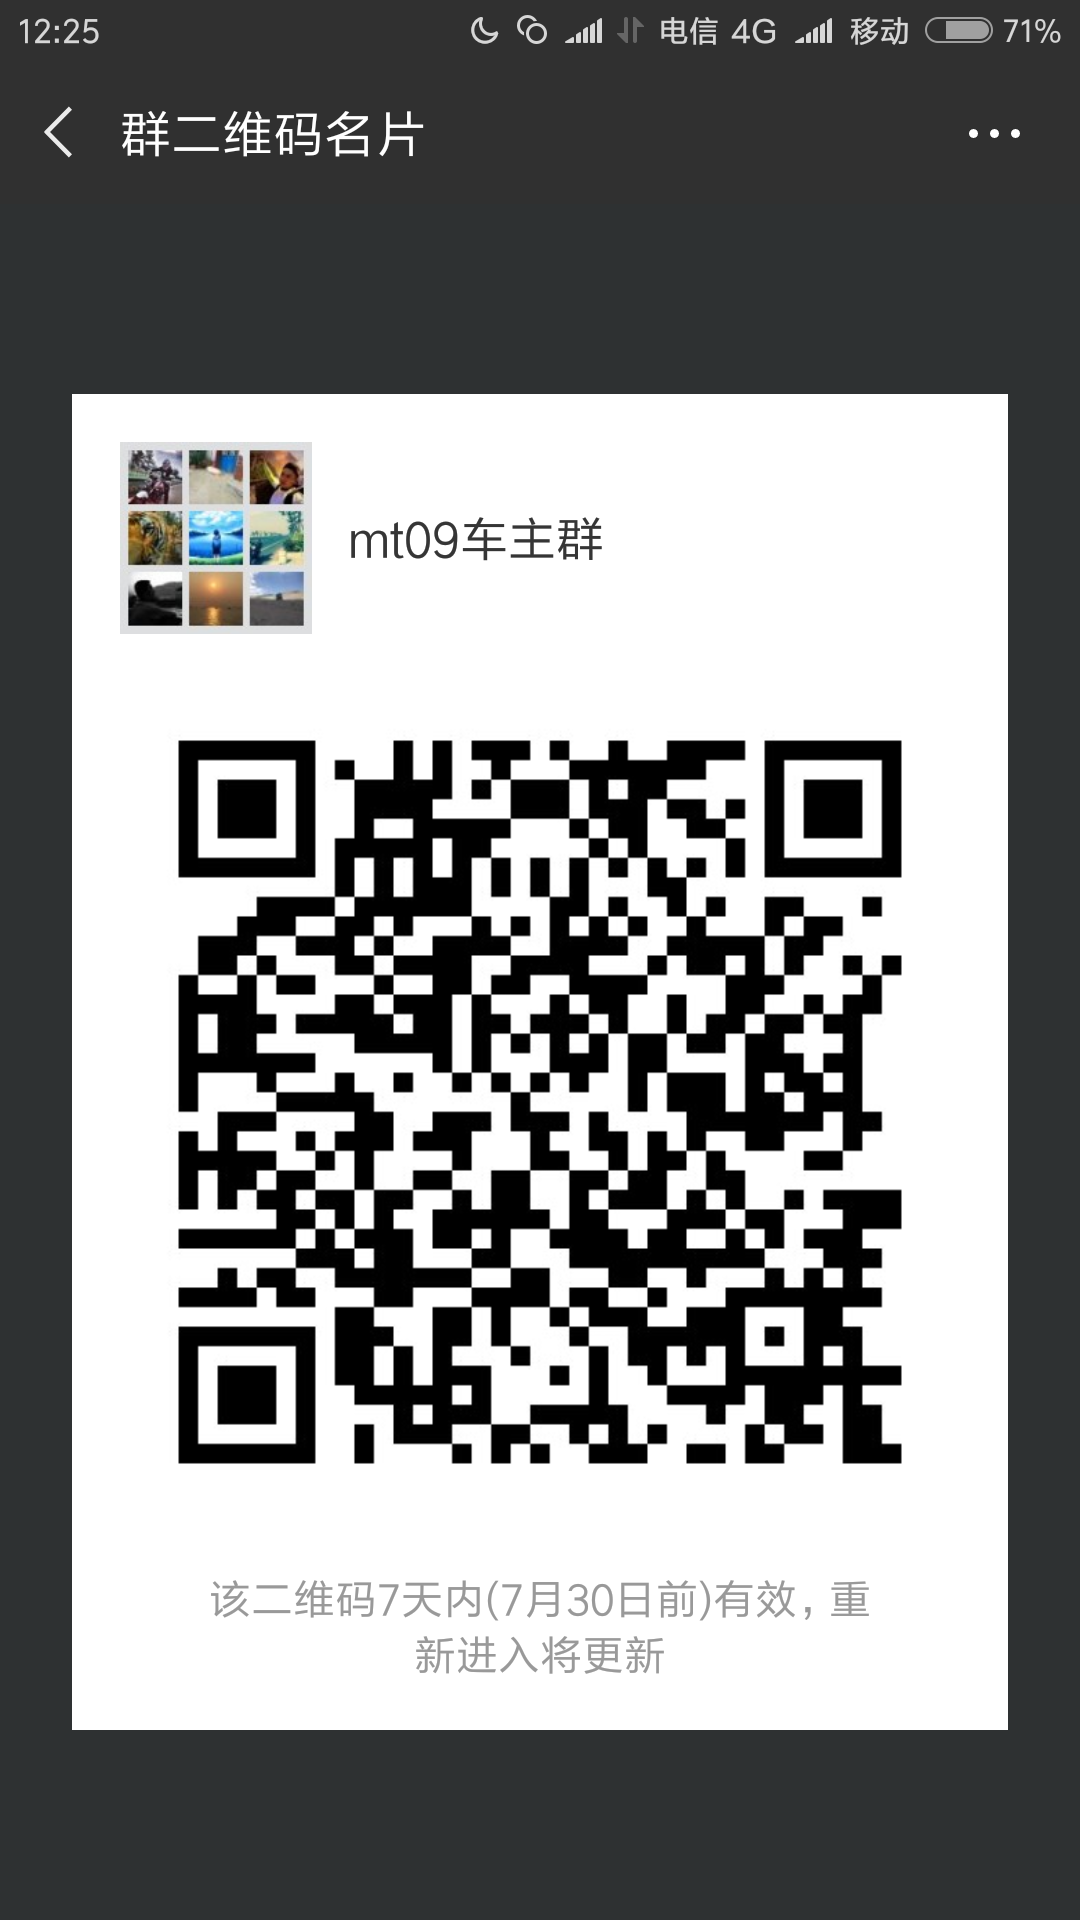 Screenshot_2018-07-23-12-25-05-541_com.tencent.mm.png